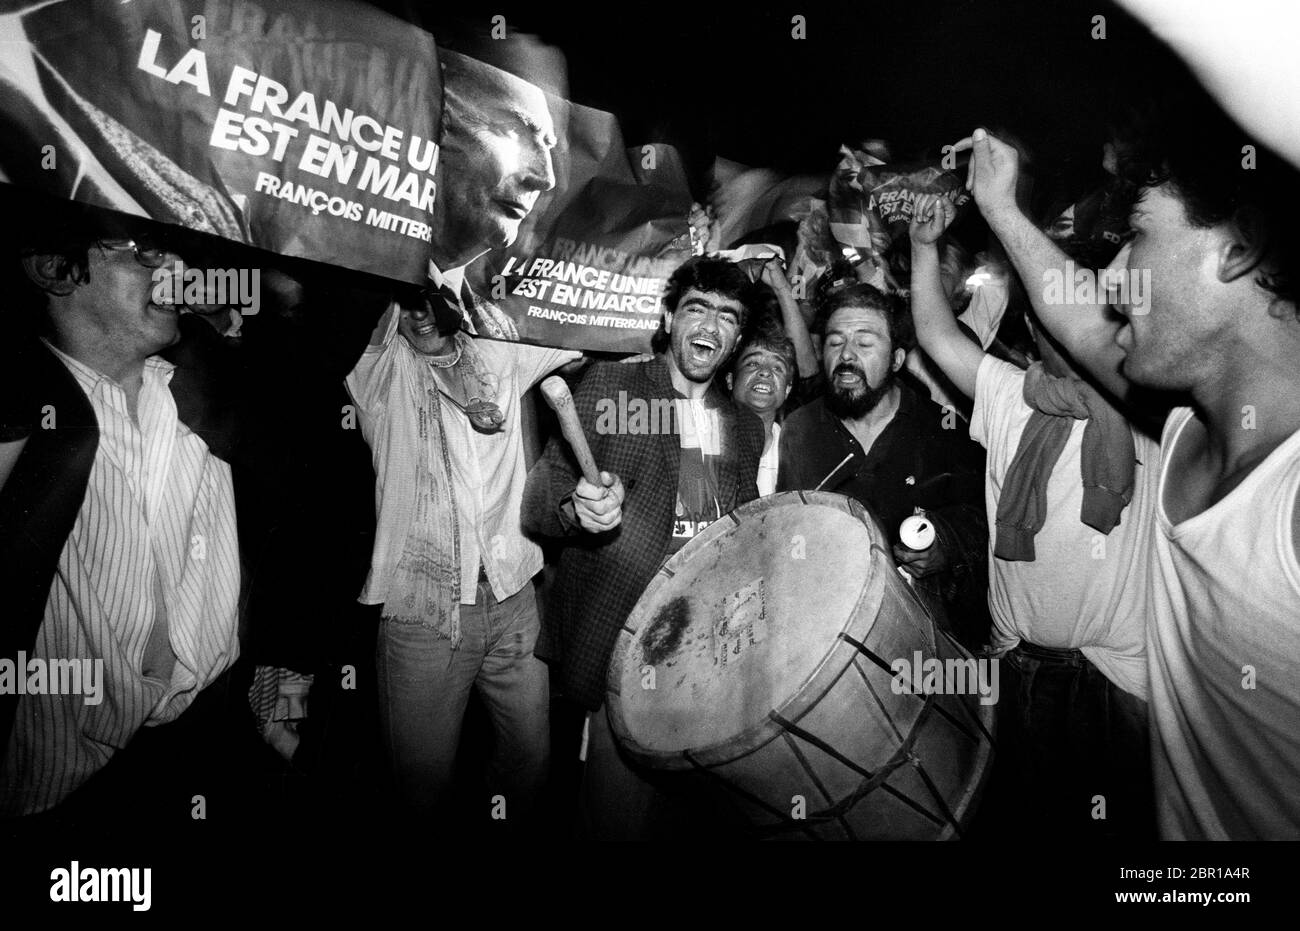 Wahlen In Frankreich 1988. Francois Mitterrand Anhänger feiern seinen Wahlsieg für die Sozialistische Partei in der Place de la Republic in Paris 1988 Stockfoto